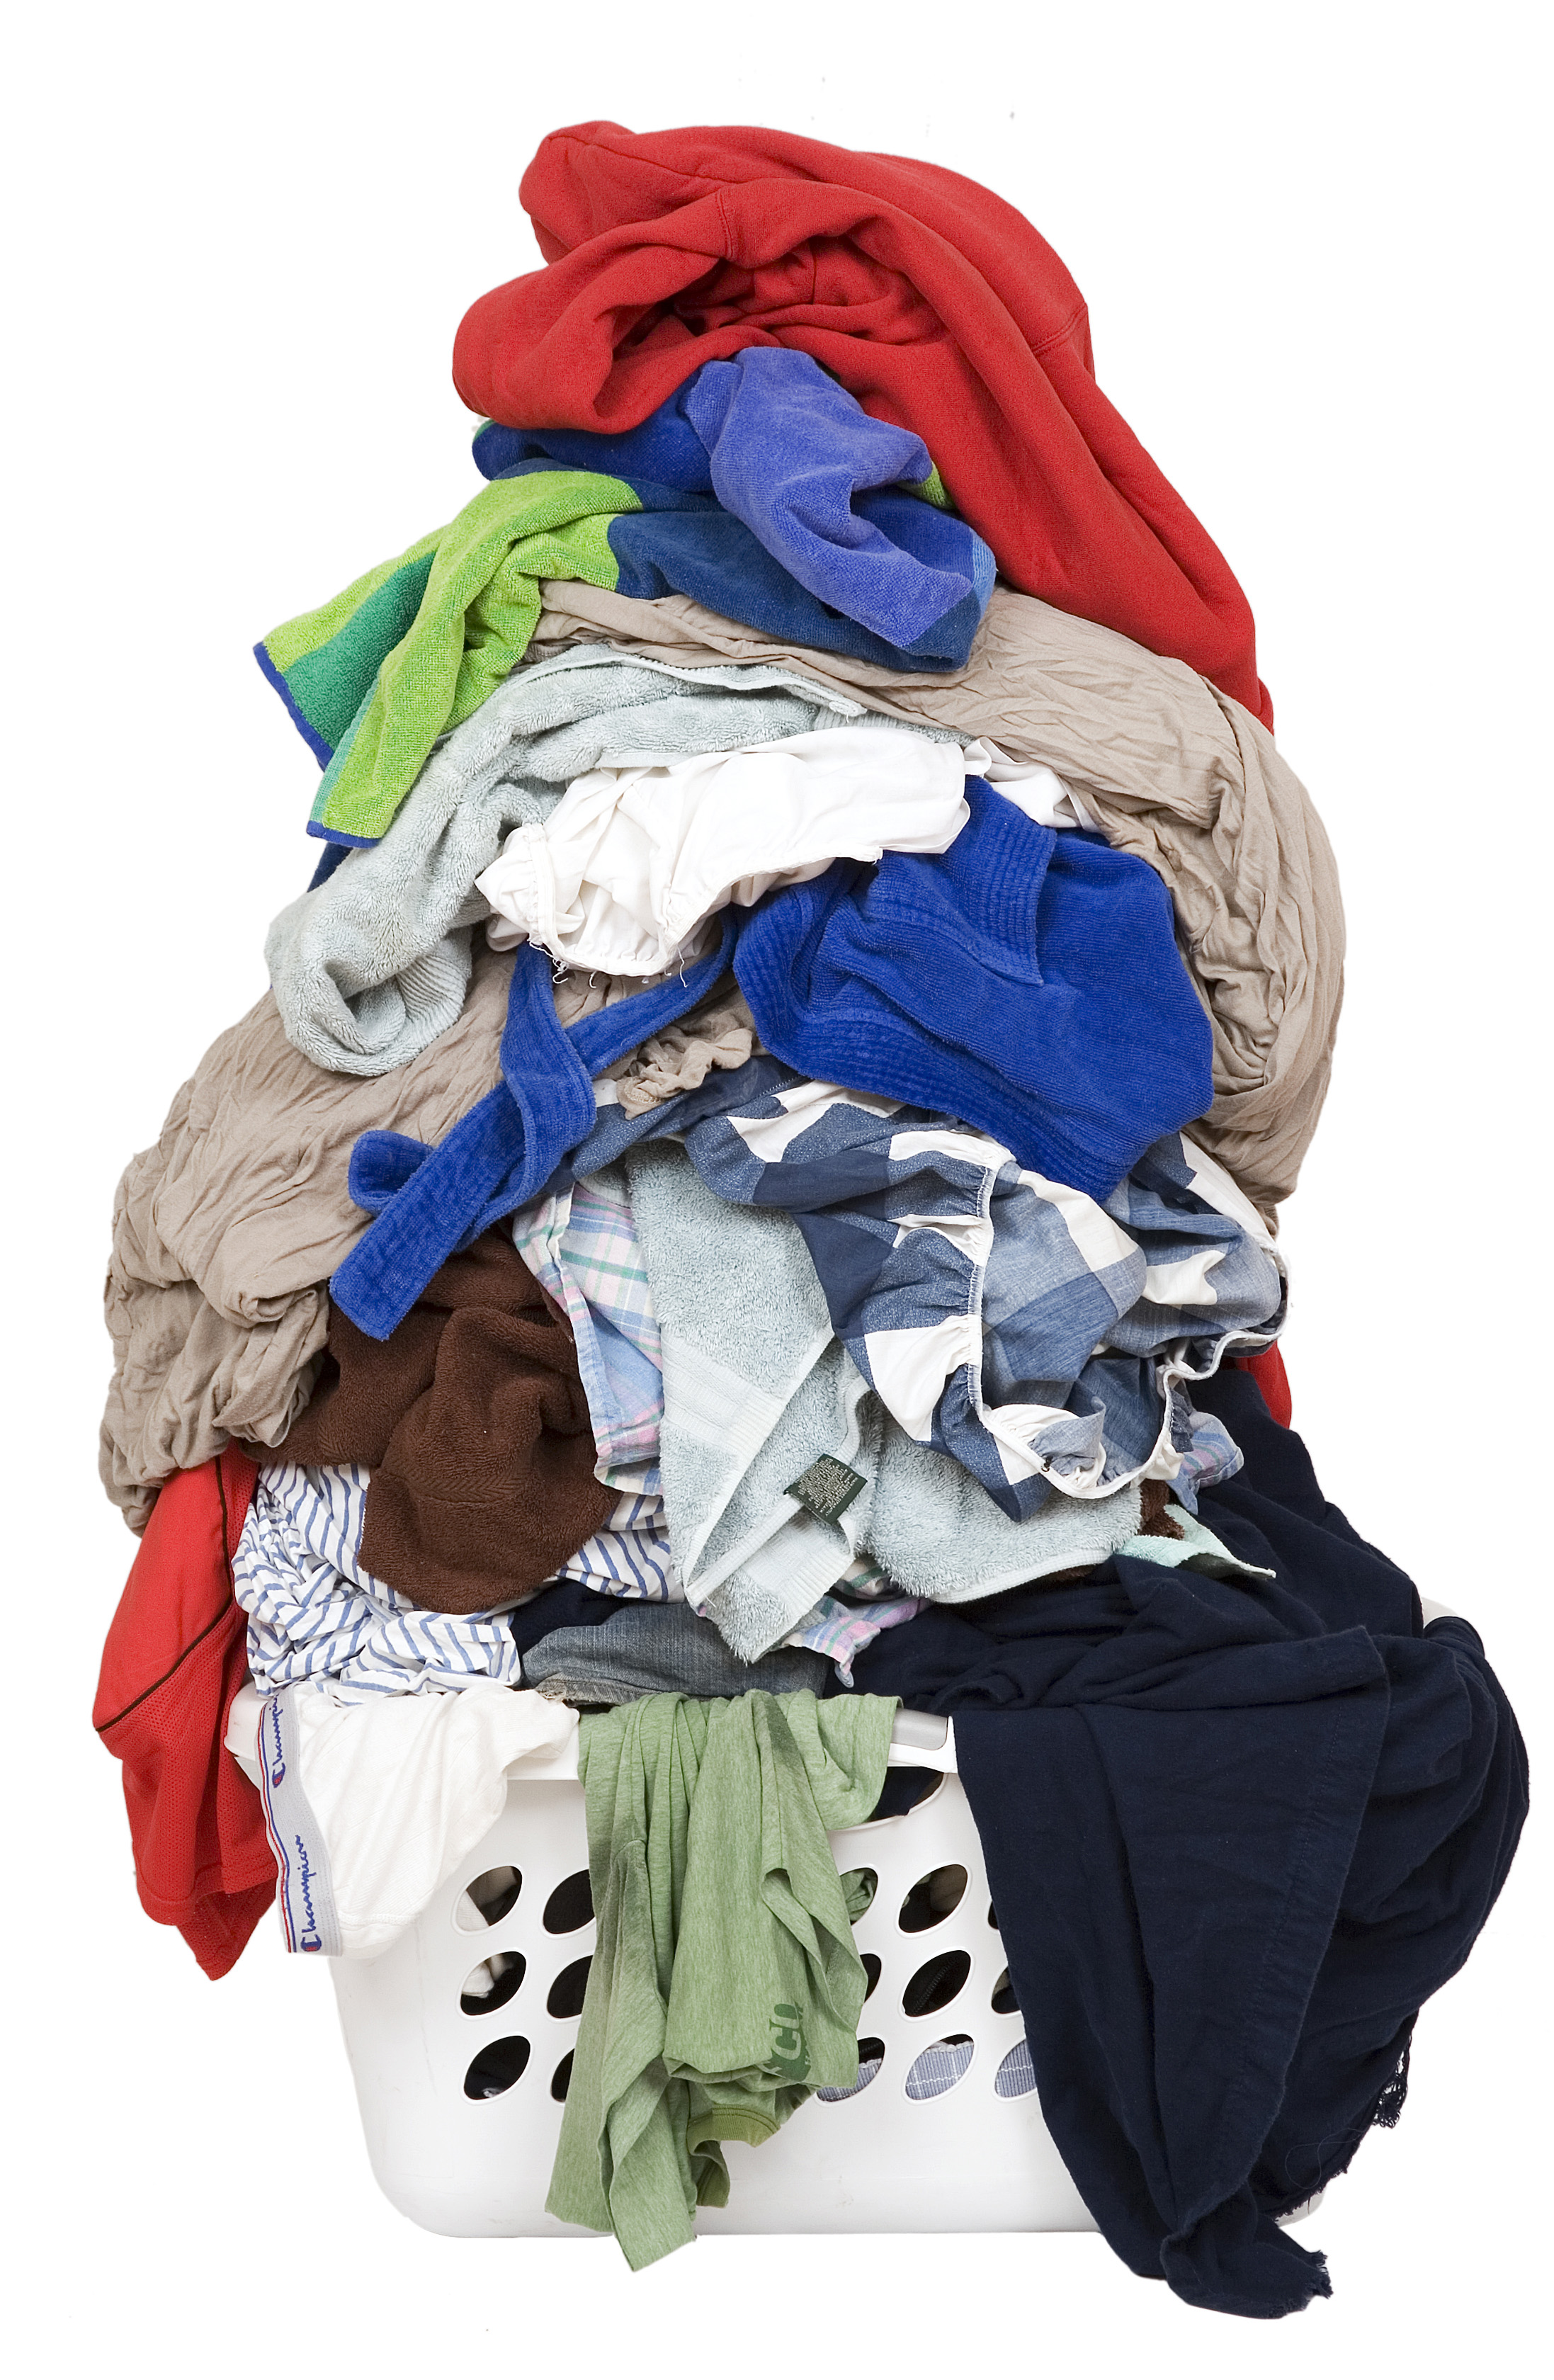 clothes basket clipart - photo #36